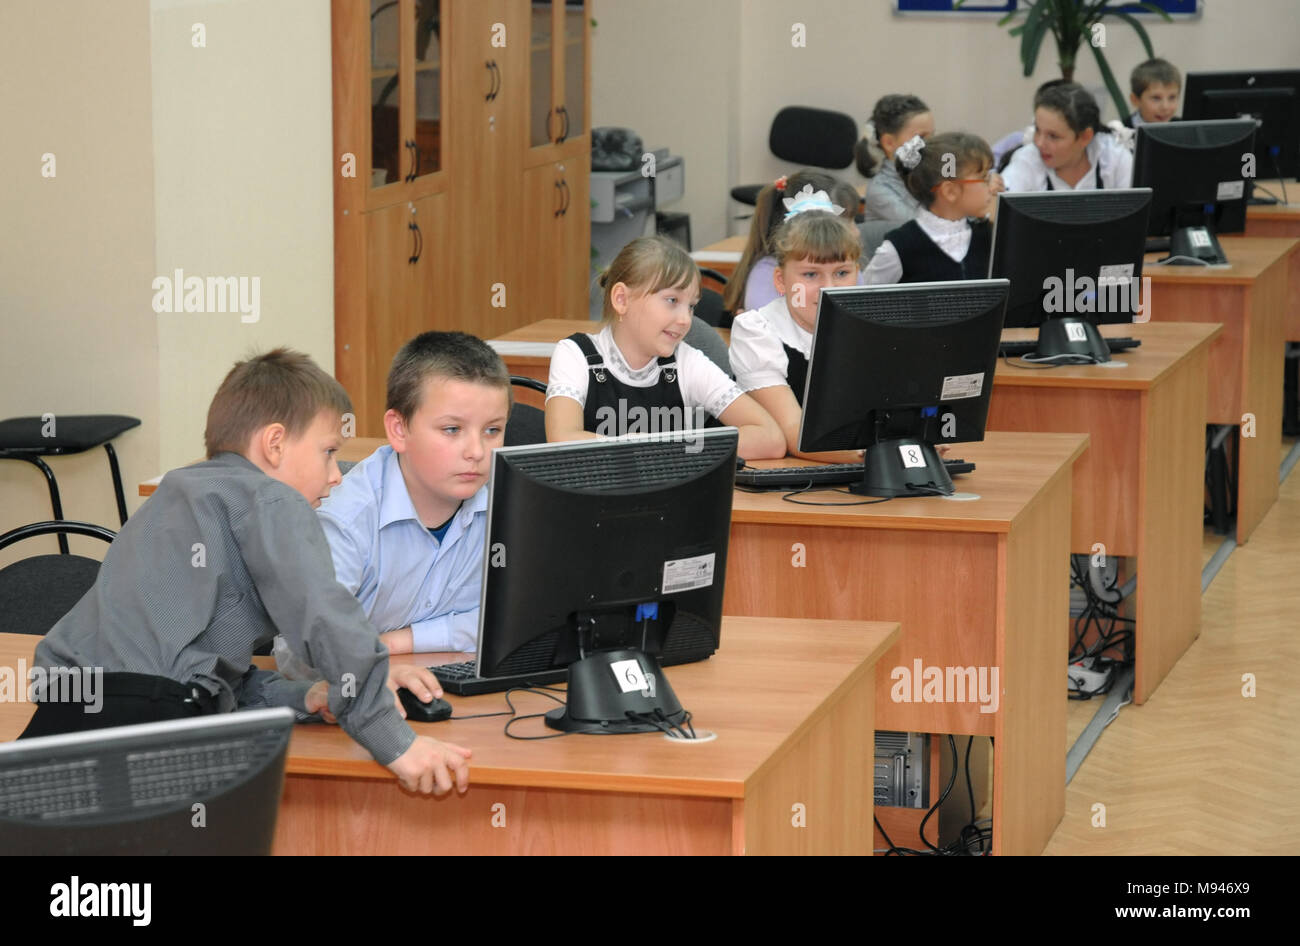 В школу в 6 лет можно ли. Школьники за компьютерами в классе. Ученик за компьютером. Компьютер в школе. Школьники на информатике.